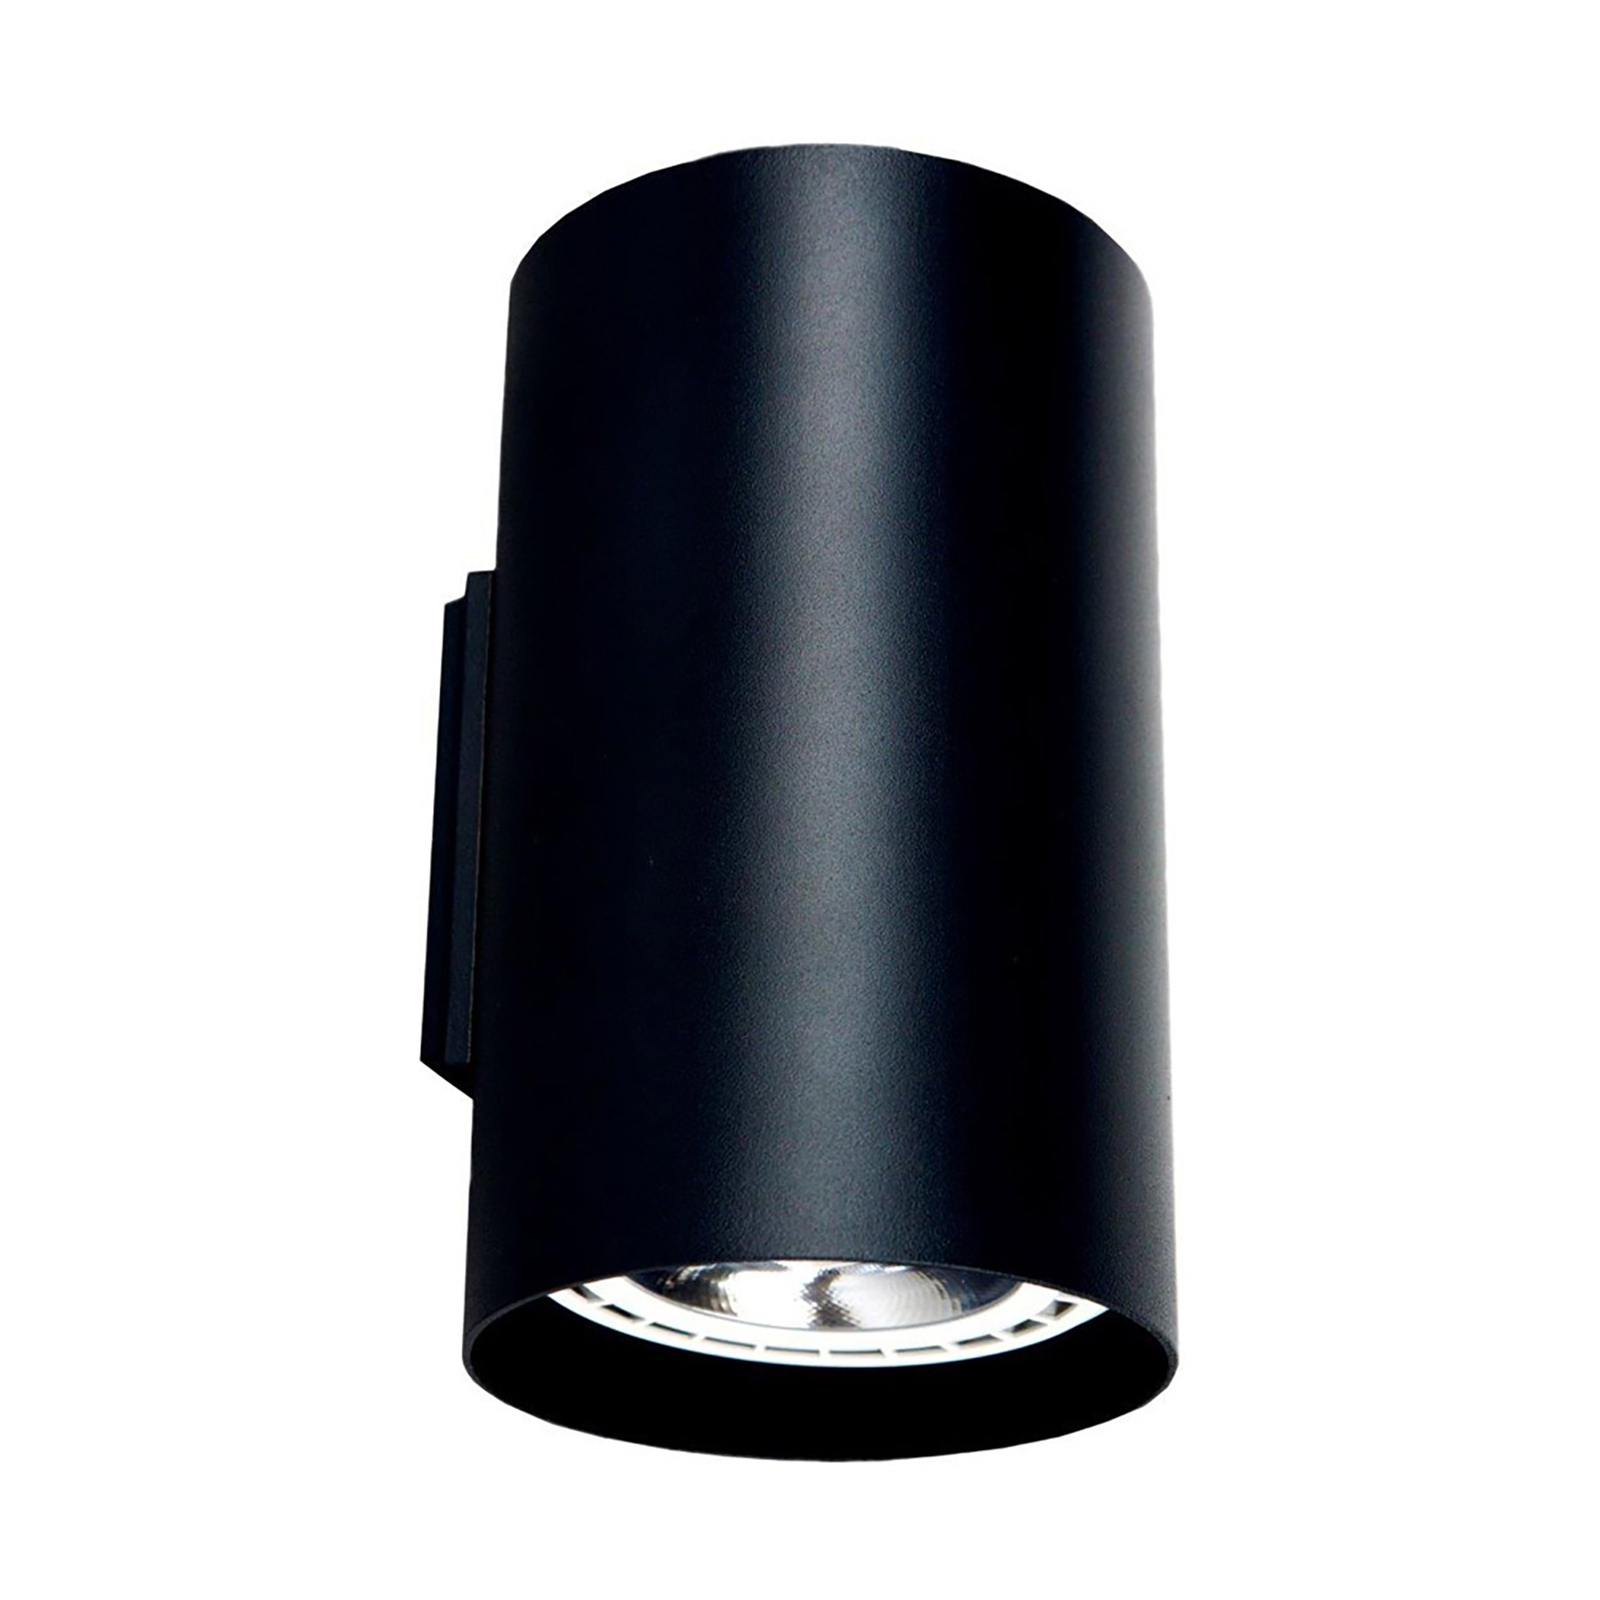 Stenska svetilka iz aluminija v črni barvi navzgor in navzdol